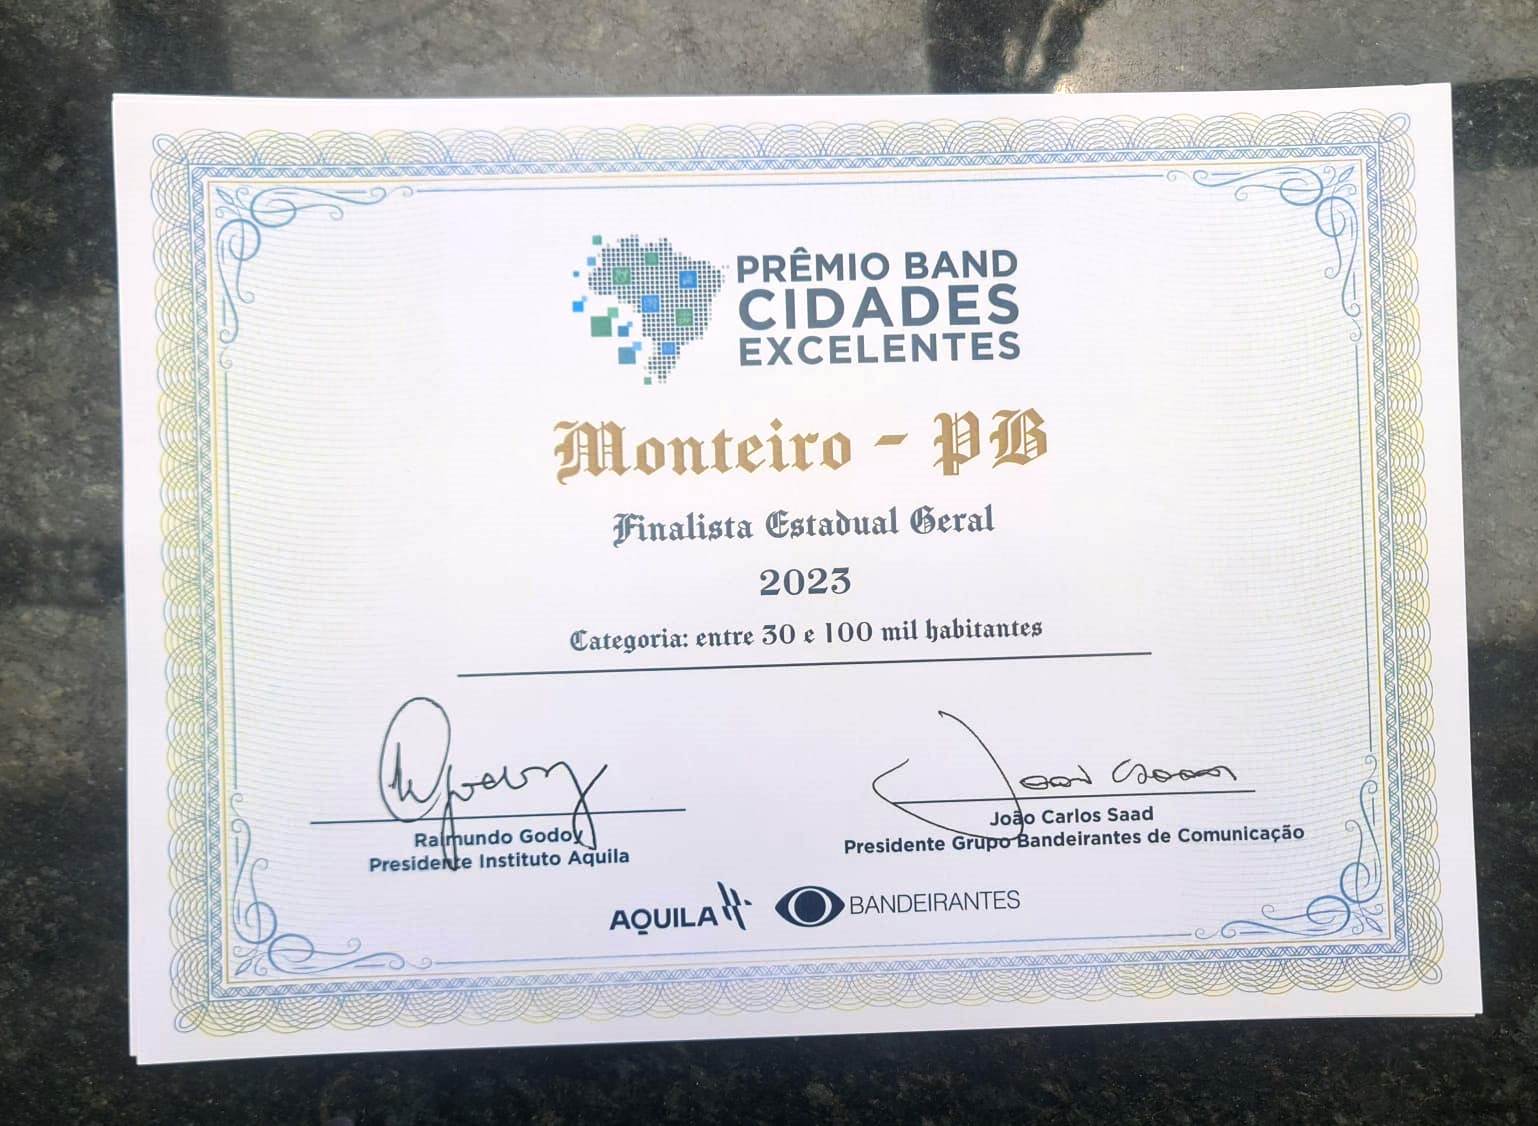 Premio-Band3 Monteiro fica entre os três municípios no Prêmio Principal – IGMA Geral no "Prêmio Band Cidades Excelentes"